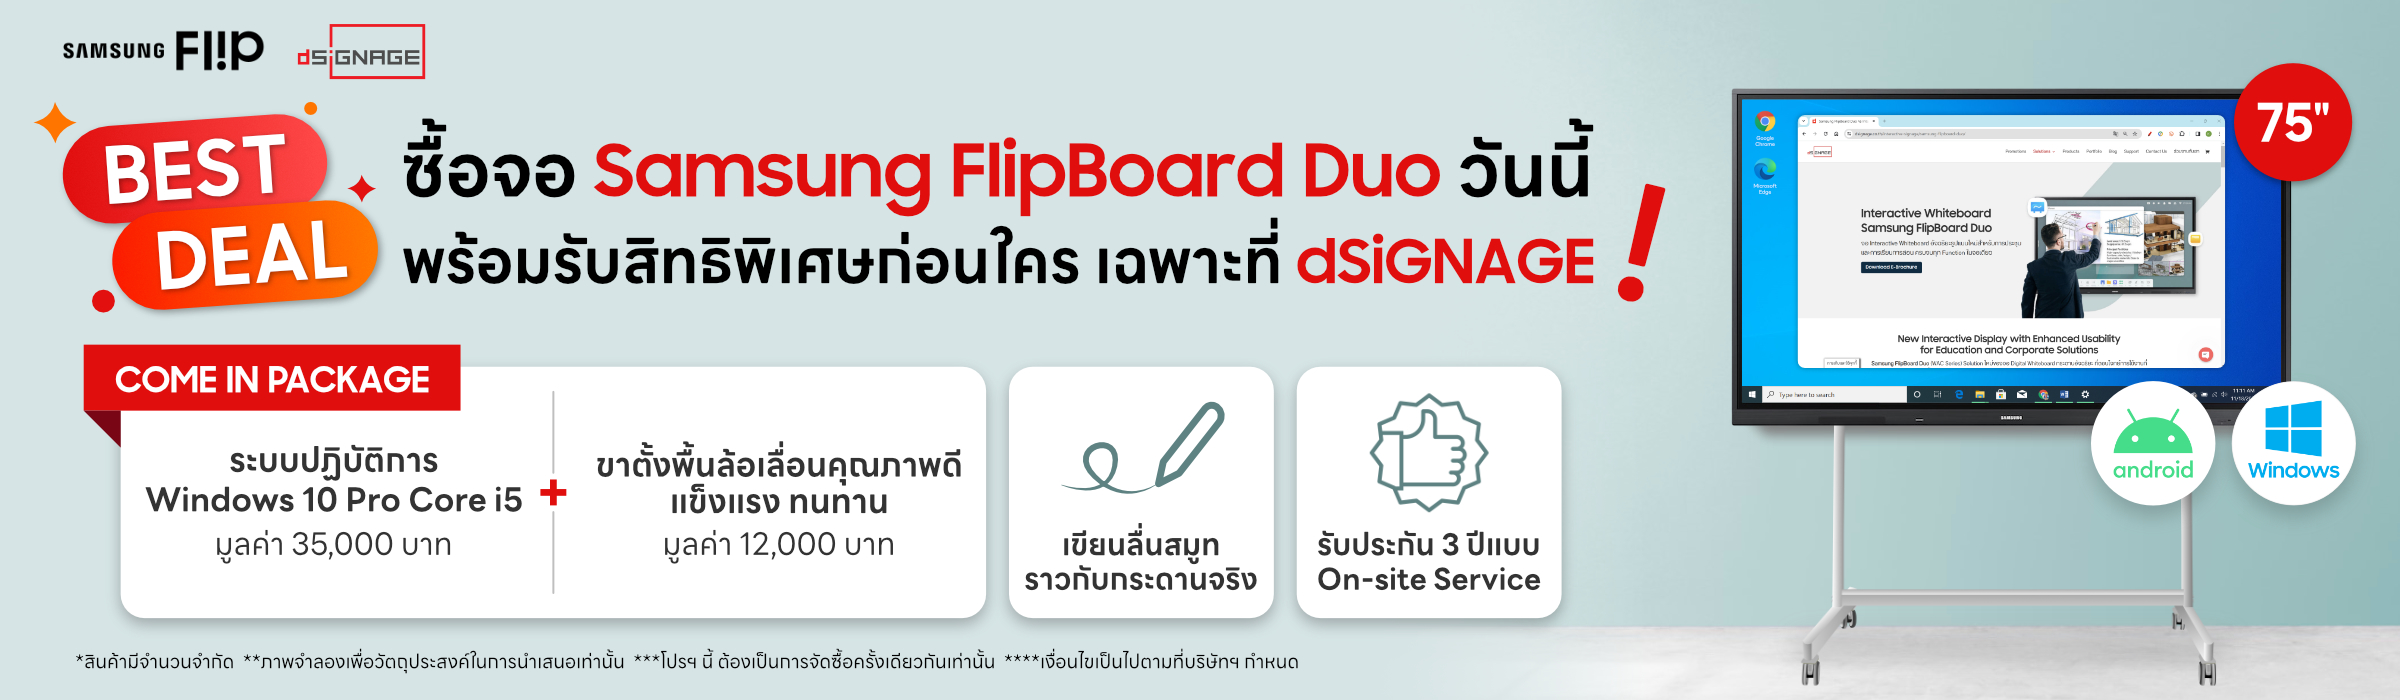 โปรโมชัน Flip Board Duo